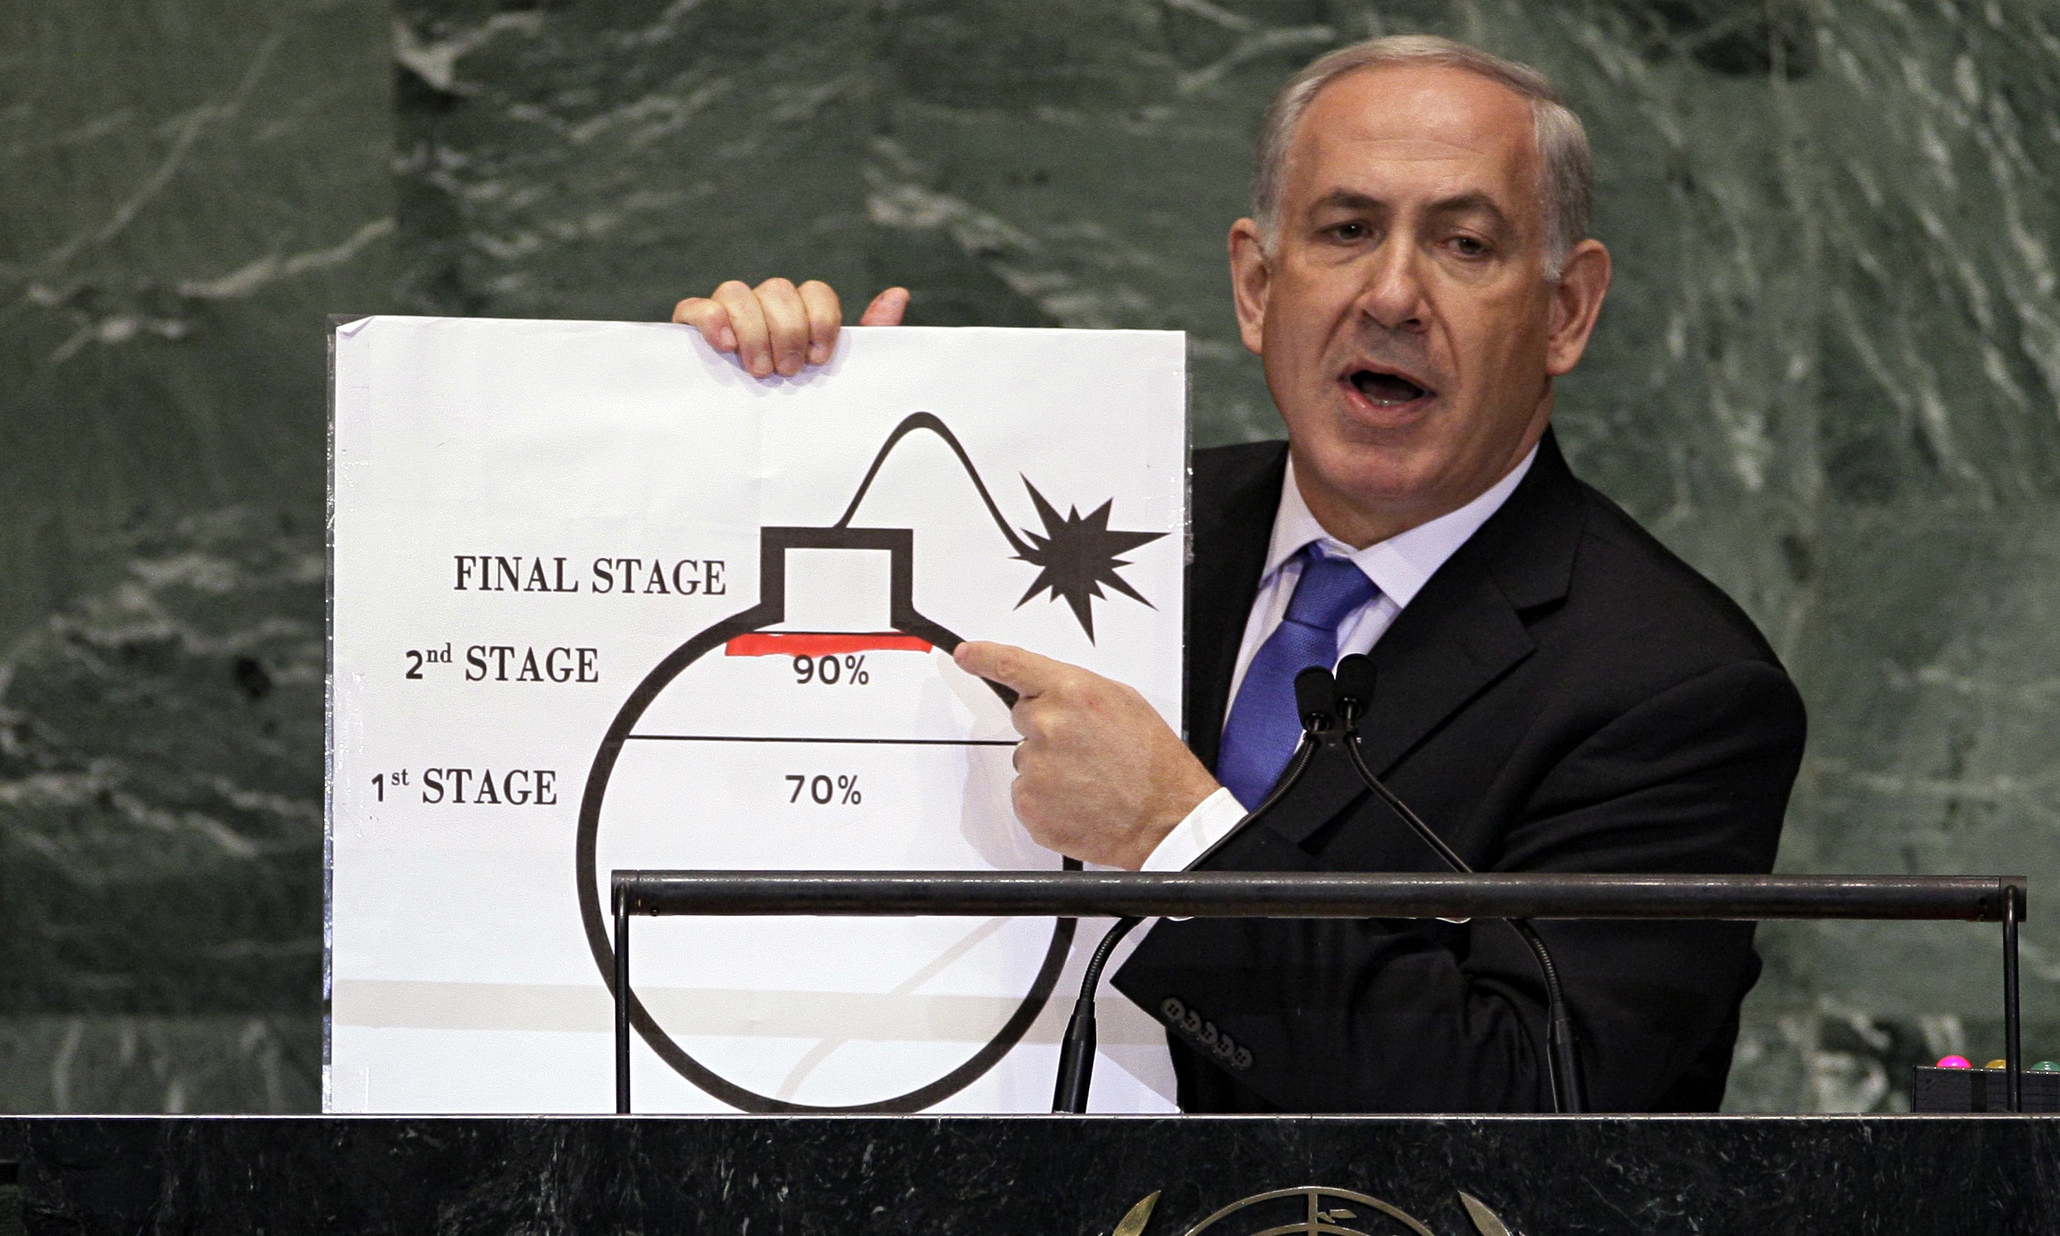 Binyamin-Netanyahu-009.jpg